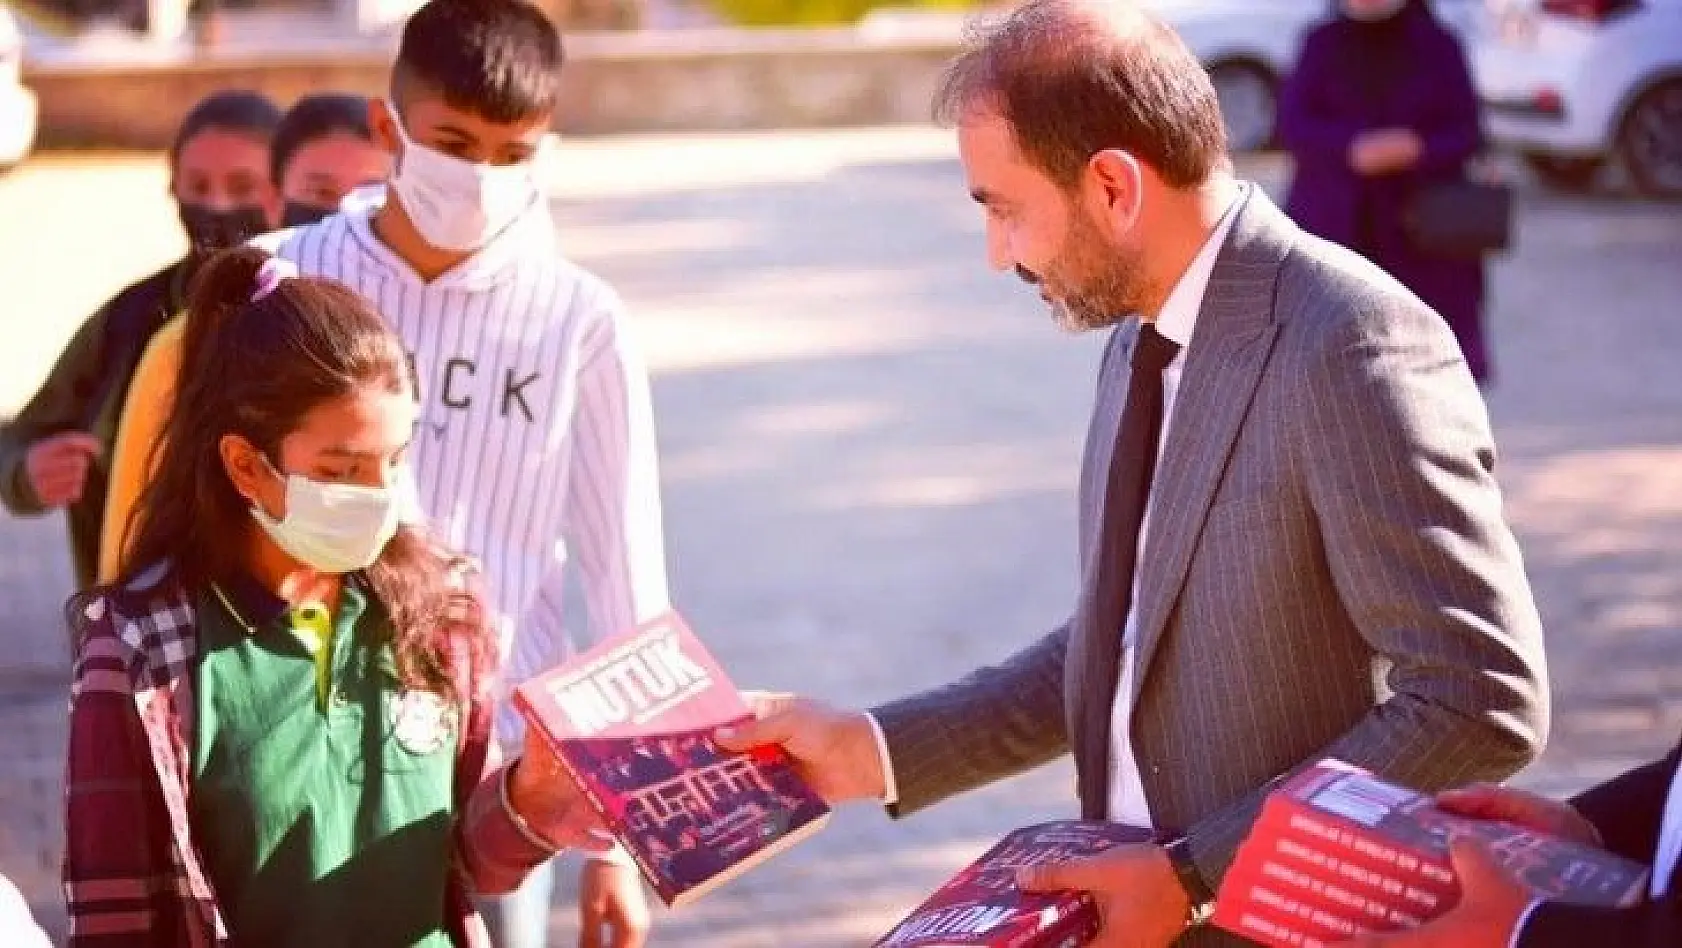 CHP Elazığ İl Başkanı Duran, öğrencilere Nutuk kitabını hediye etti